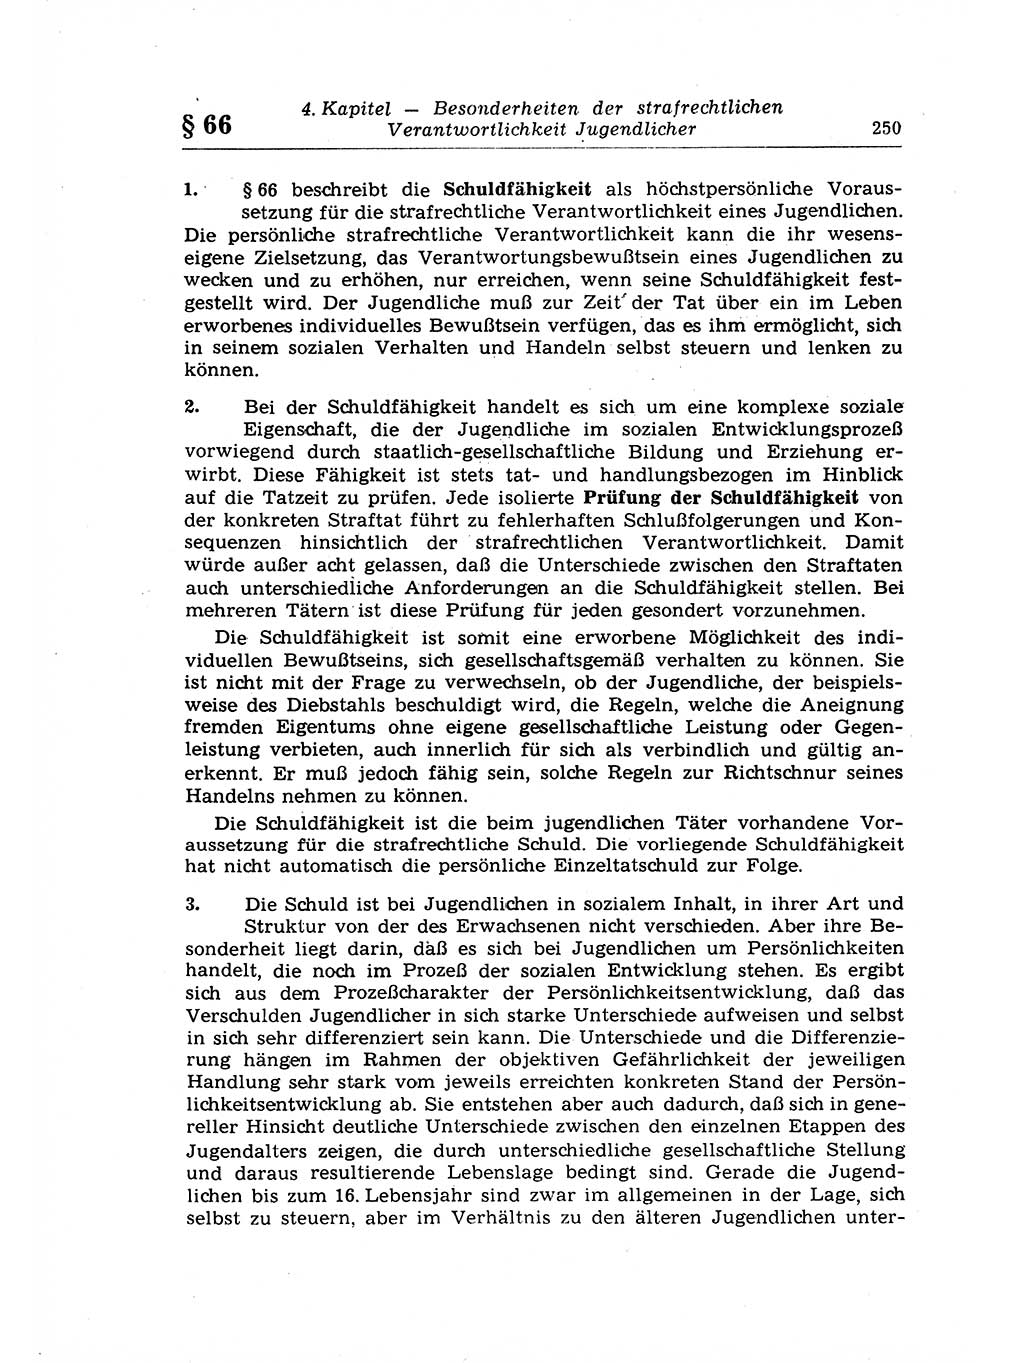 Strafrecht der Deutschen Demokratischen Republik (DDR), Lehrkommentar zum Strafgesetzbuch (StGB), Allgemeiner Teil 1969, Seite 250 (Strafr. DDR Lehrkomm. StGB AT 1969, S. 250)